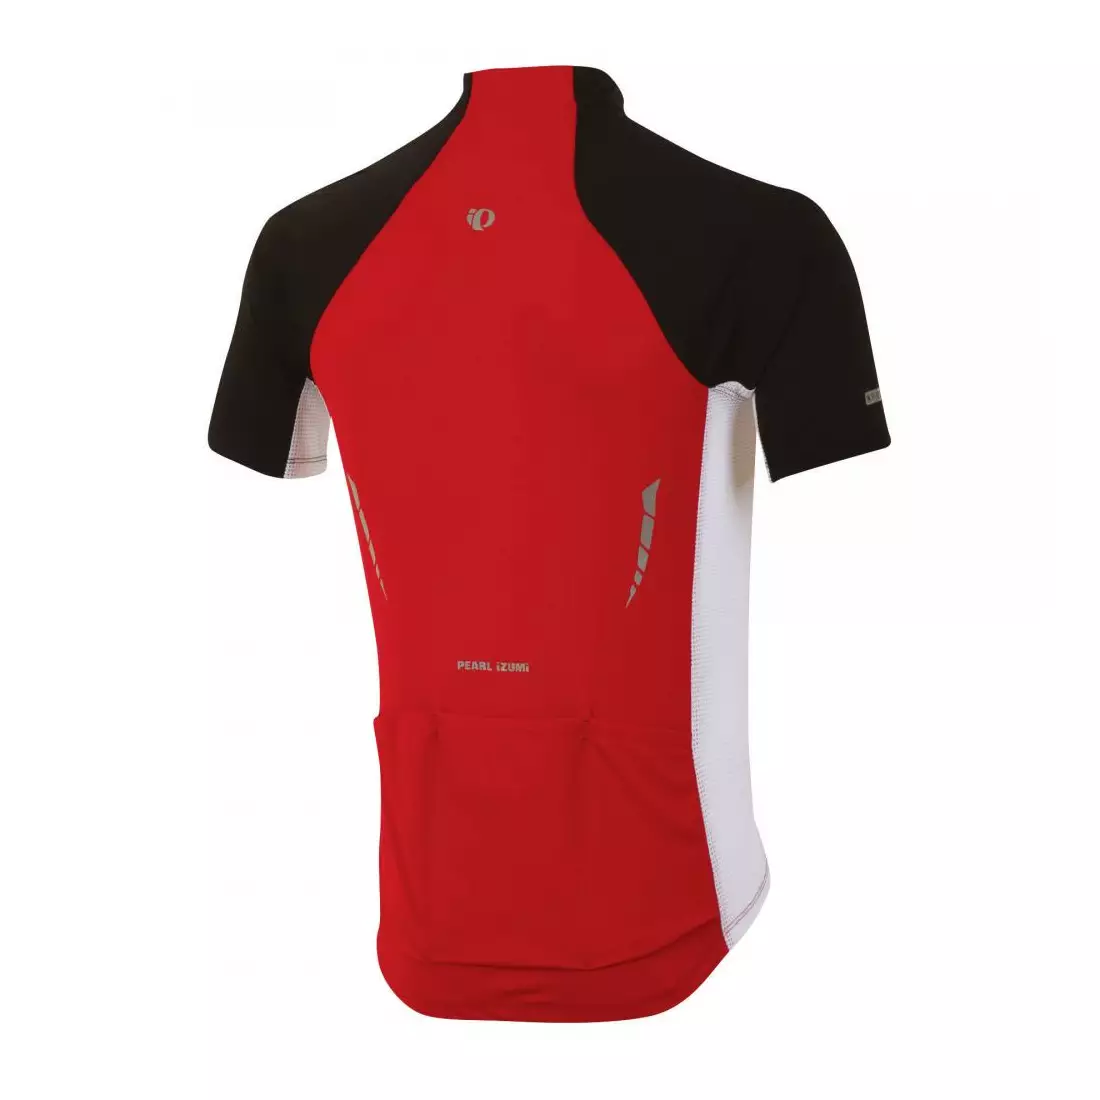 PEARL IZUMI - 11121311-3DJ ELITE PURSUIT - lehký cyklistický dres, barva: červená